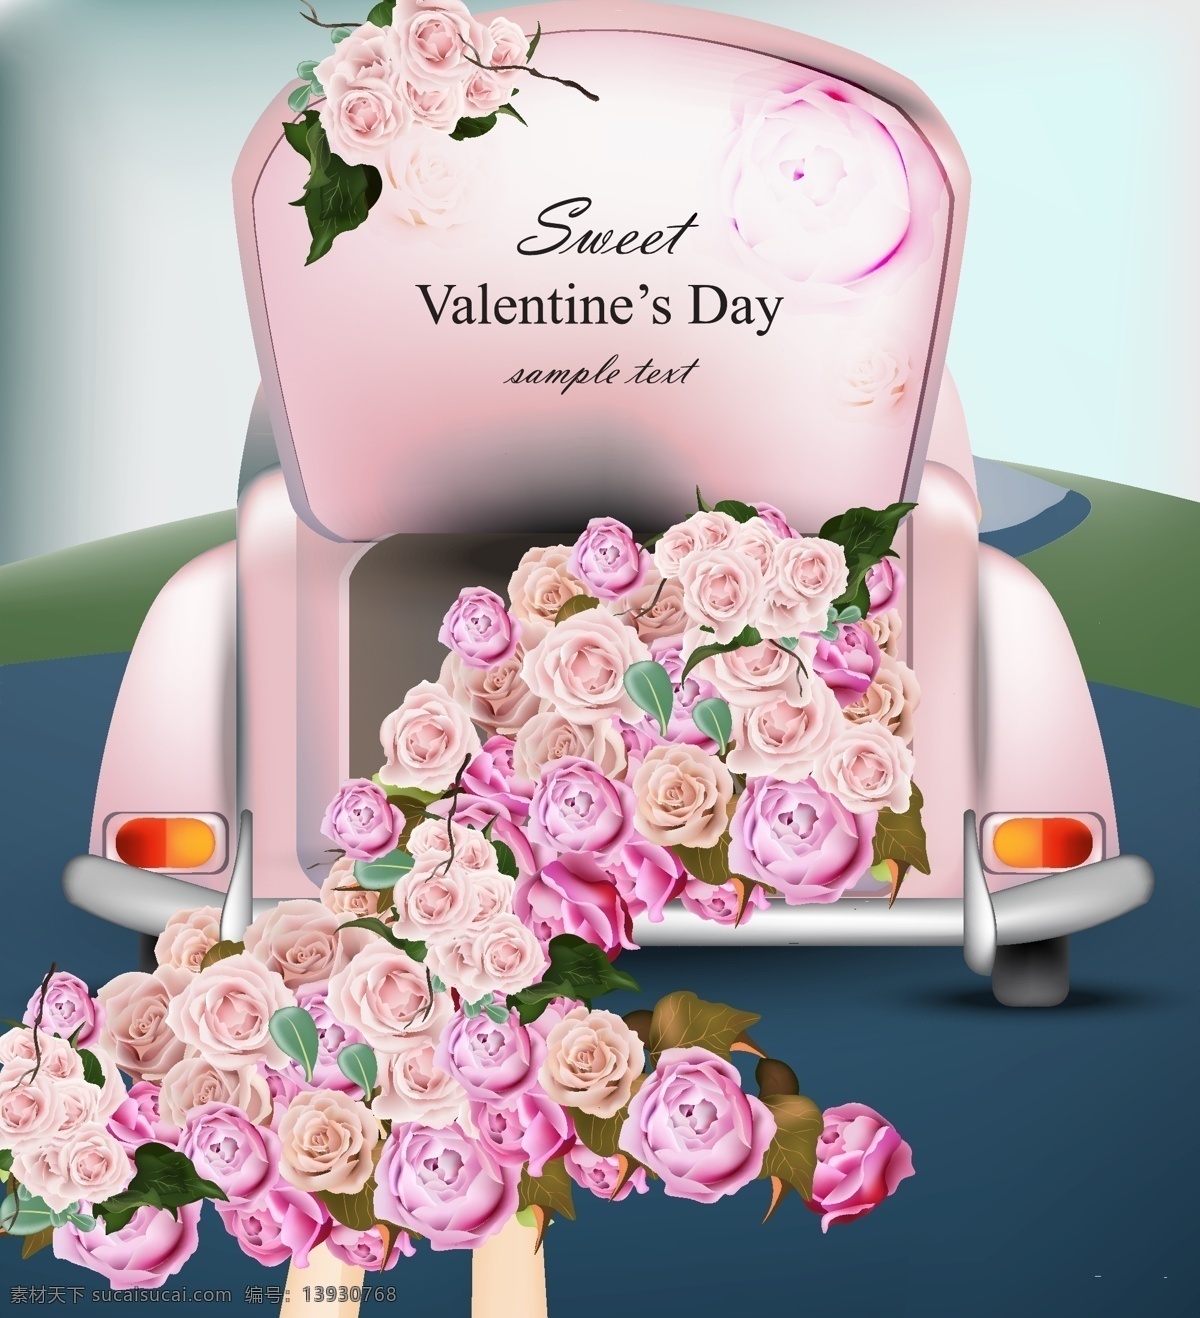 汽车 后备箱 里 玫瑰花 粉色 节日 浪漫 情人节 元素 植物